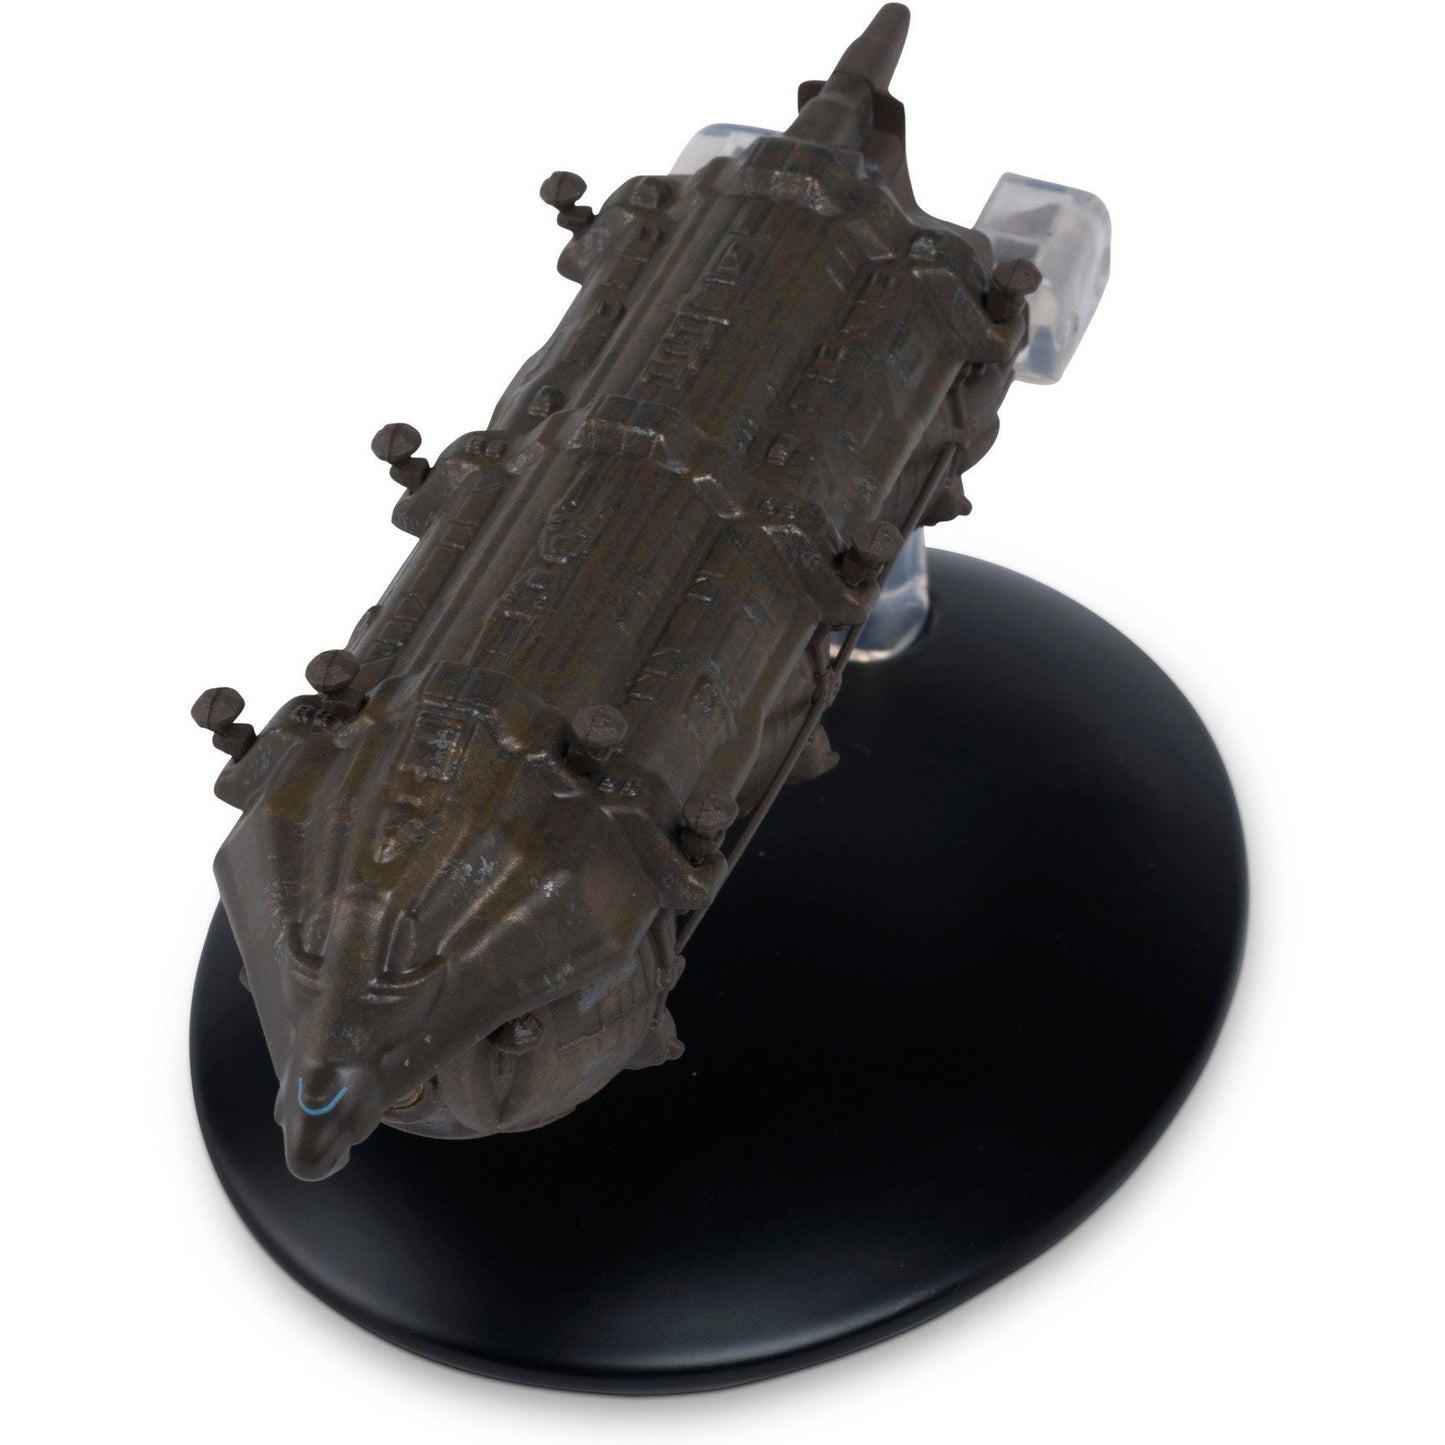 #45 Malon Freighter Model Die Cast Ship (Eaglemoss / Star Trek)